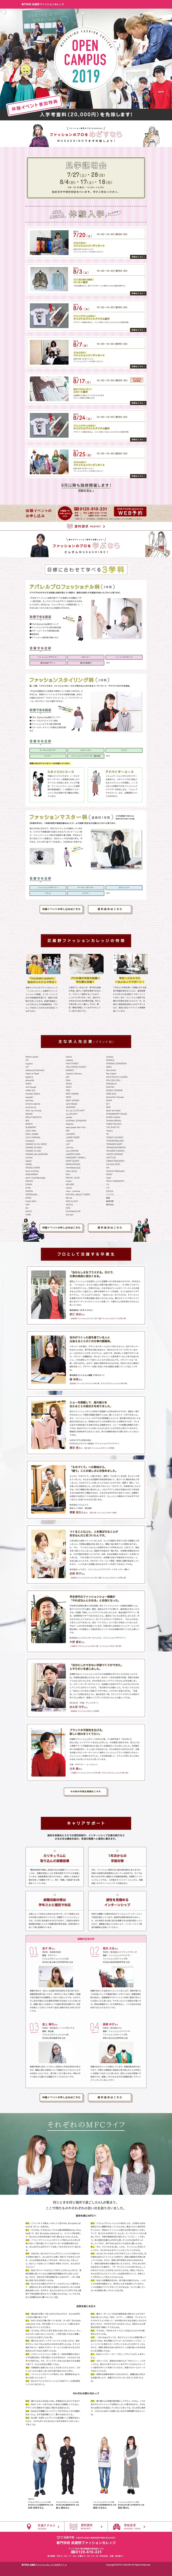 武蔵野ファッションカレッジサイトのランディングページデザイン Lp参考事例 Lp幹事